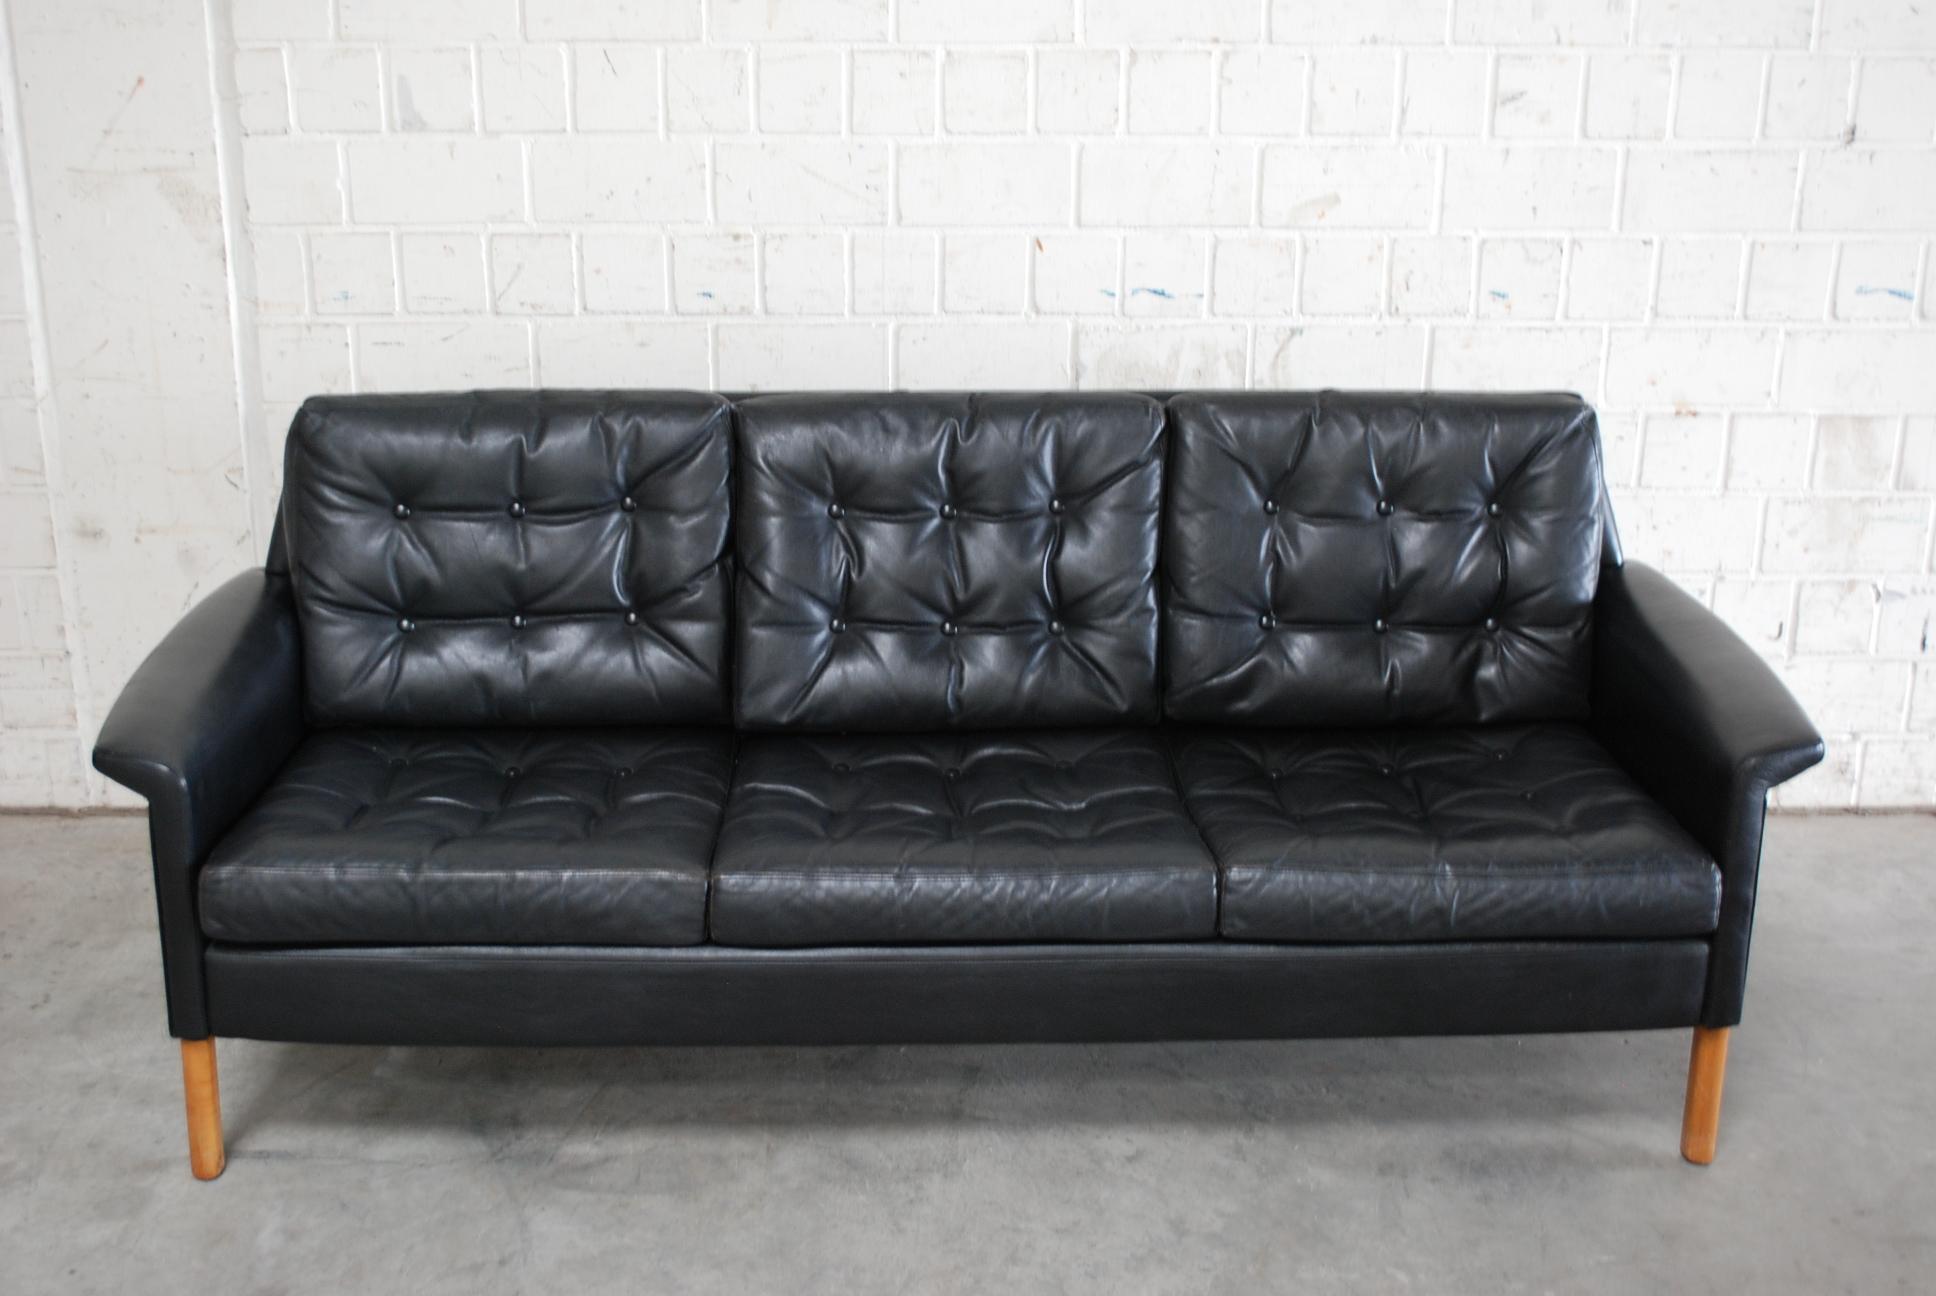 Canapé en cuir noir de Rudolf Glatzel fabriqué par le fabricant allemand Kill International.
Un grand design des années 1960.
Nous avons également 2 fauteuils qui s'adaptent bien à ce canapé.